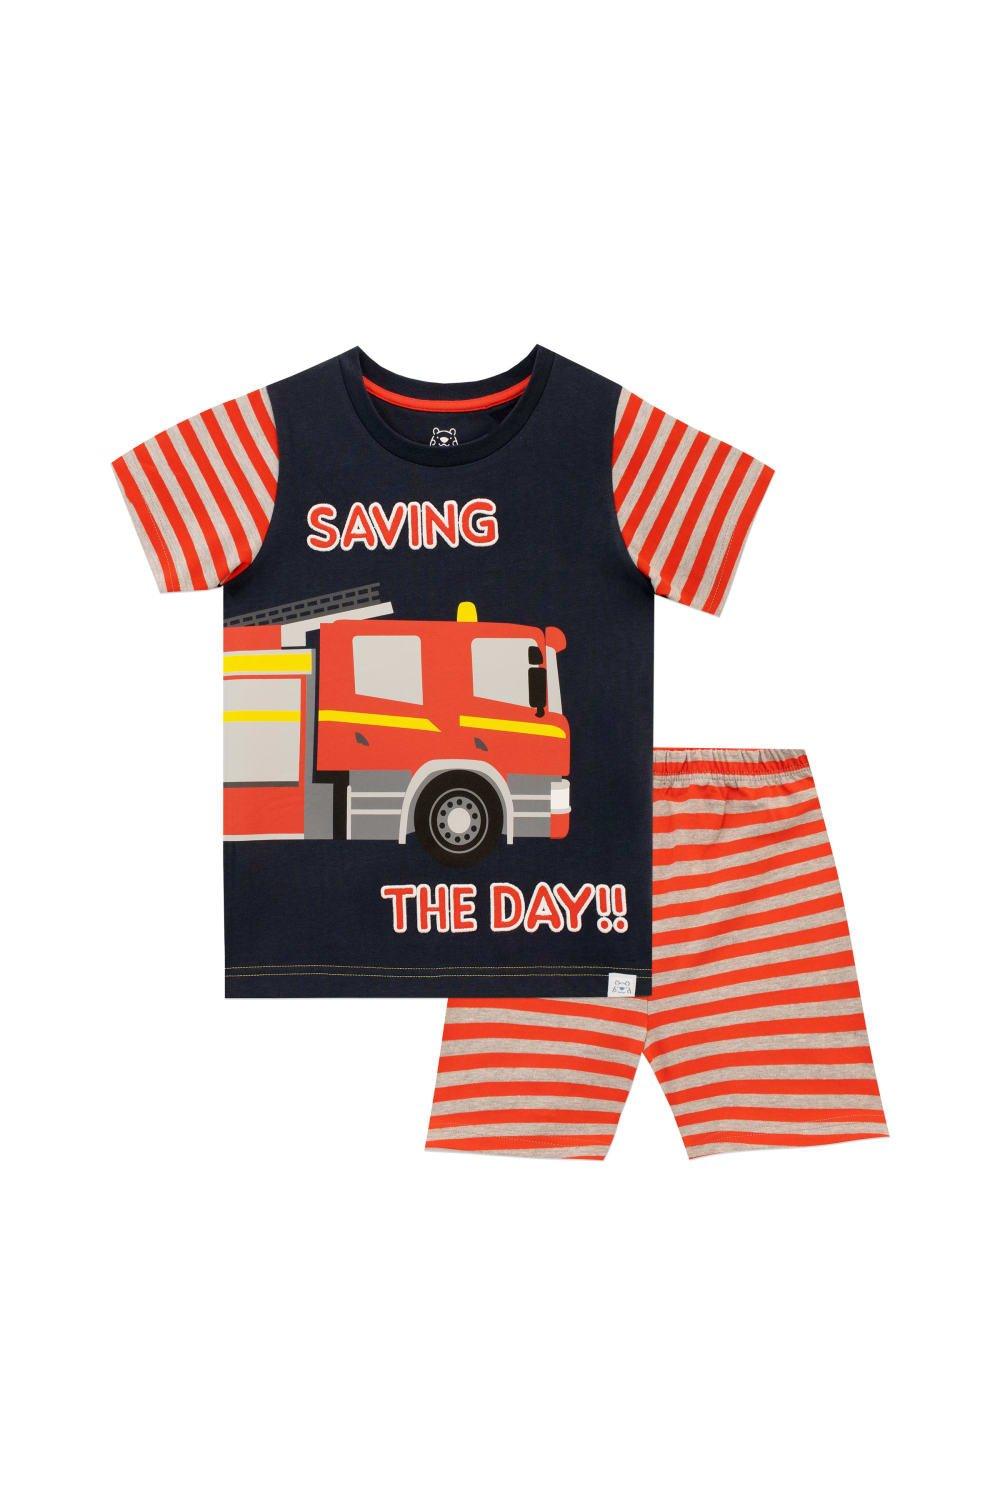 Saving The Day Fire Engine Pyjamas